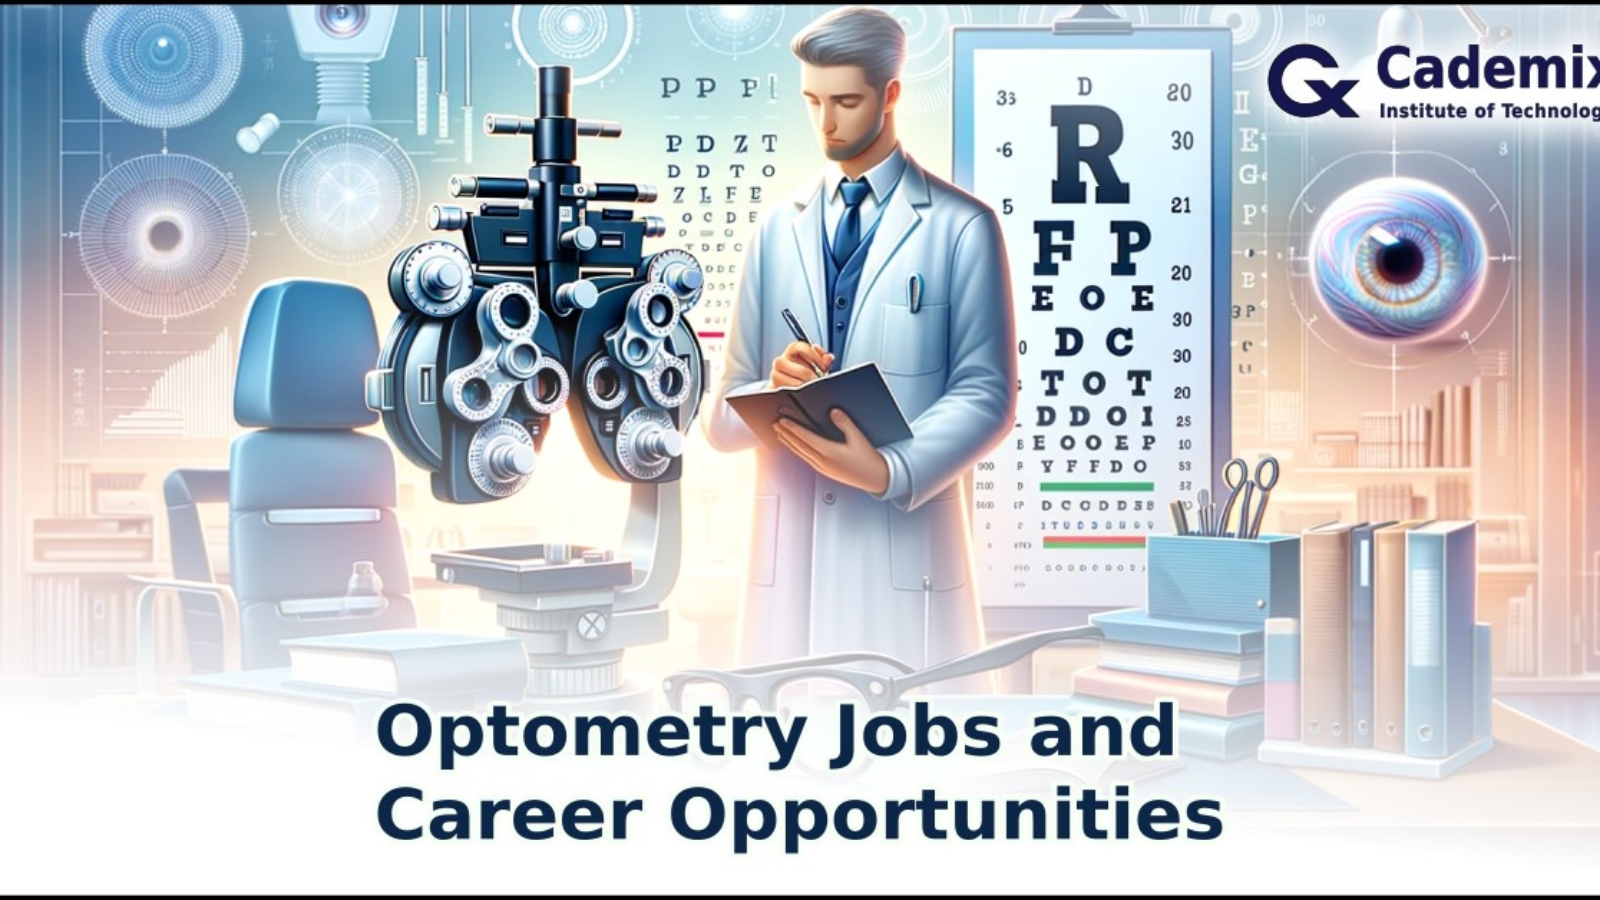 optometry jobs and career opportunities in Europe Germany Austria optometrist optometry jobs bachelor of optometry doctor of optometry bsc optometry optometrist vacancies